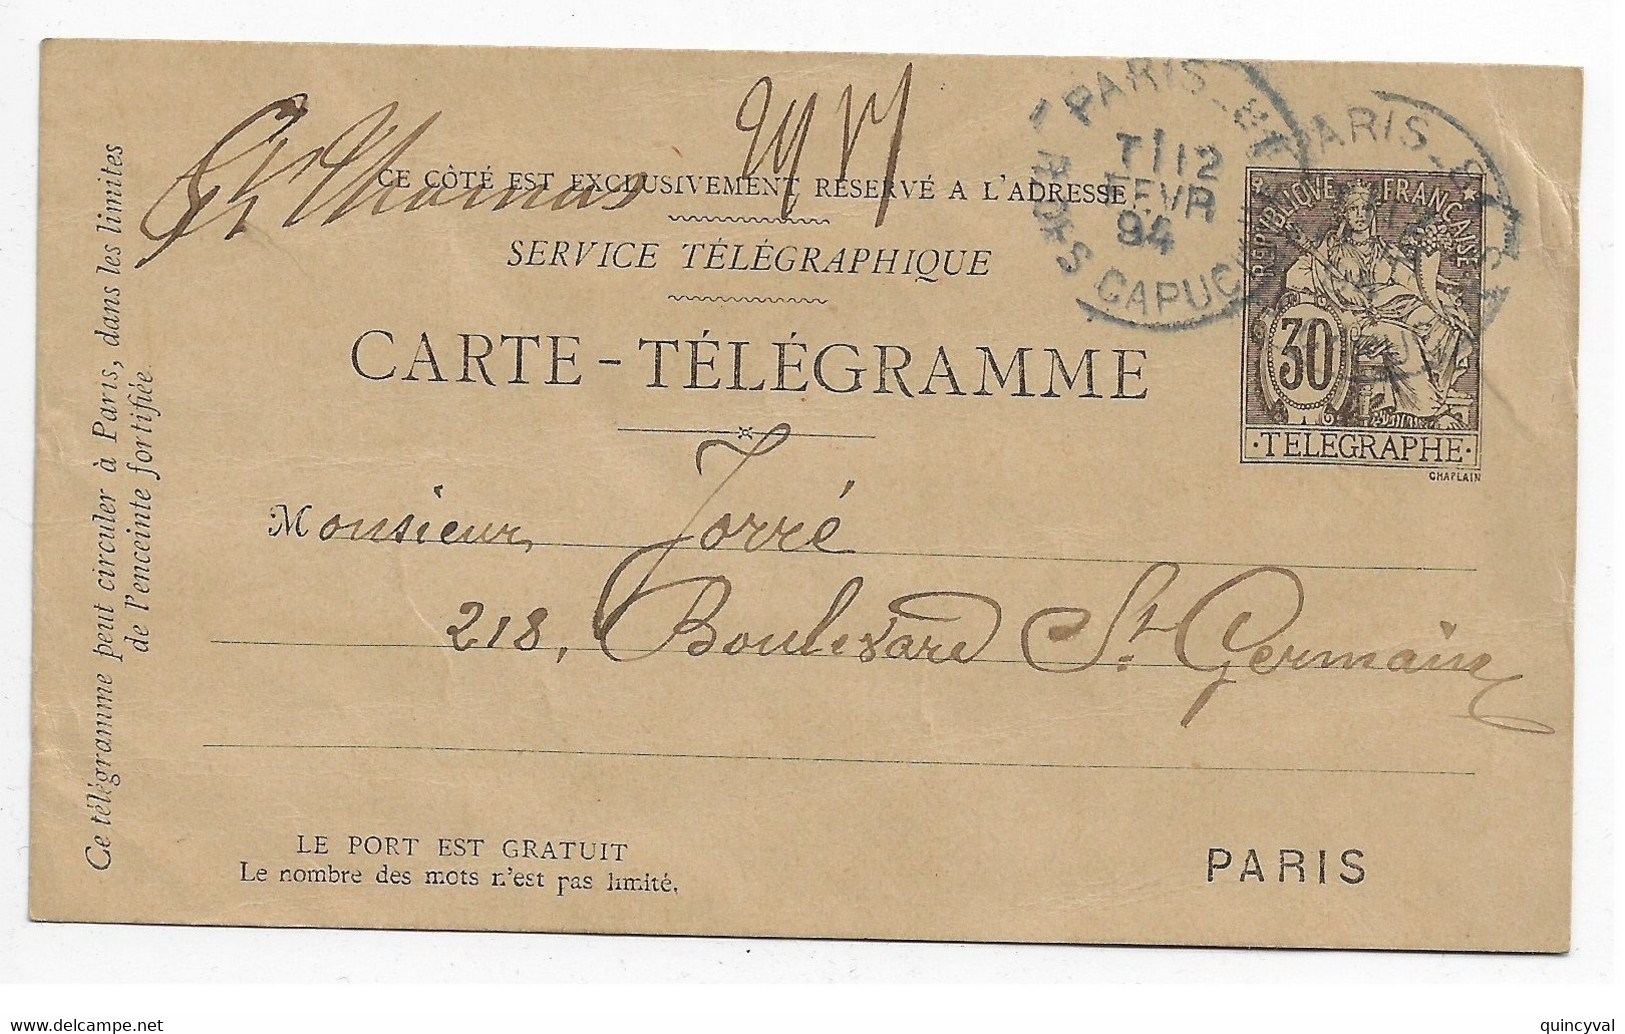 PARIS 81 R Des Capucines Carte Postale Pneumatique 30c Chaplain Noir Ob 1894 Type 1884 Yv 2511 - Pneumatic Post